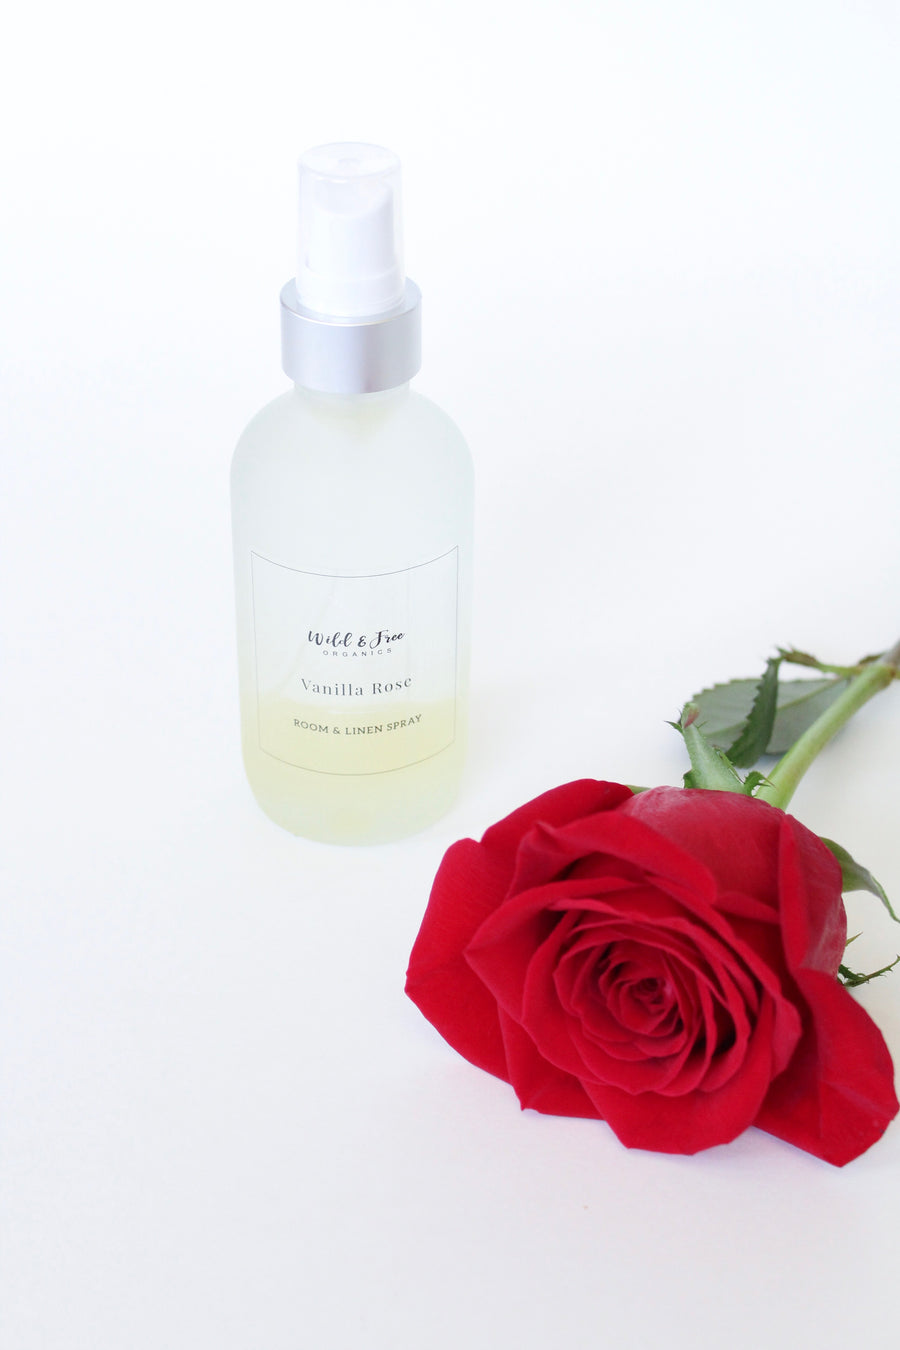 Vanilla Rose Room & Linen Spray